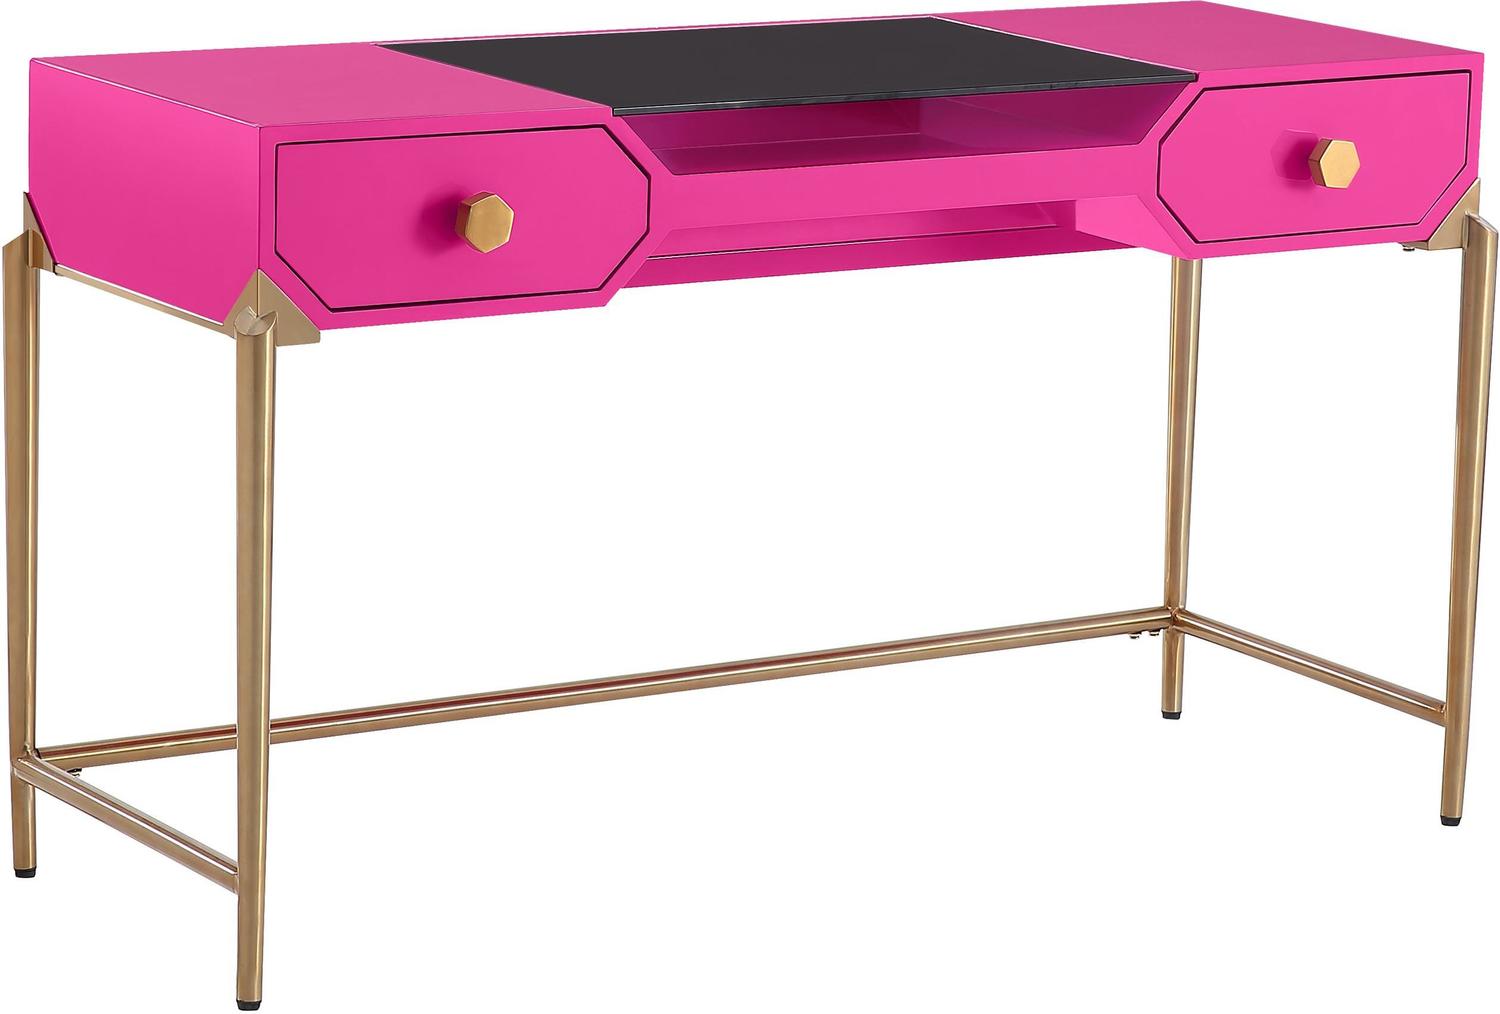  Contemporary Design Furniture Desks Desks Pink